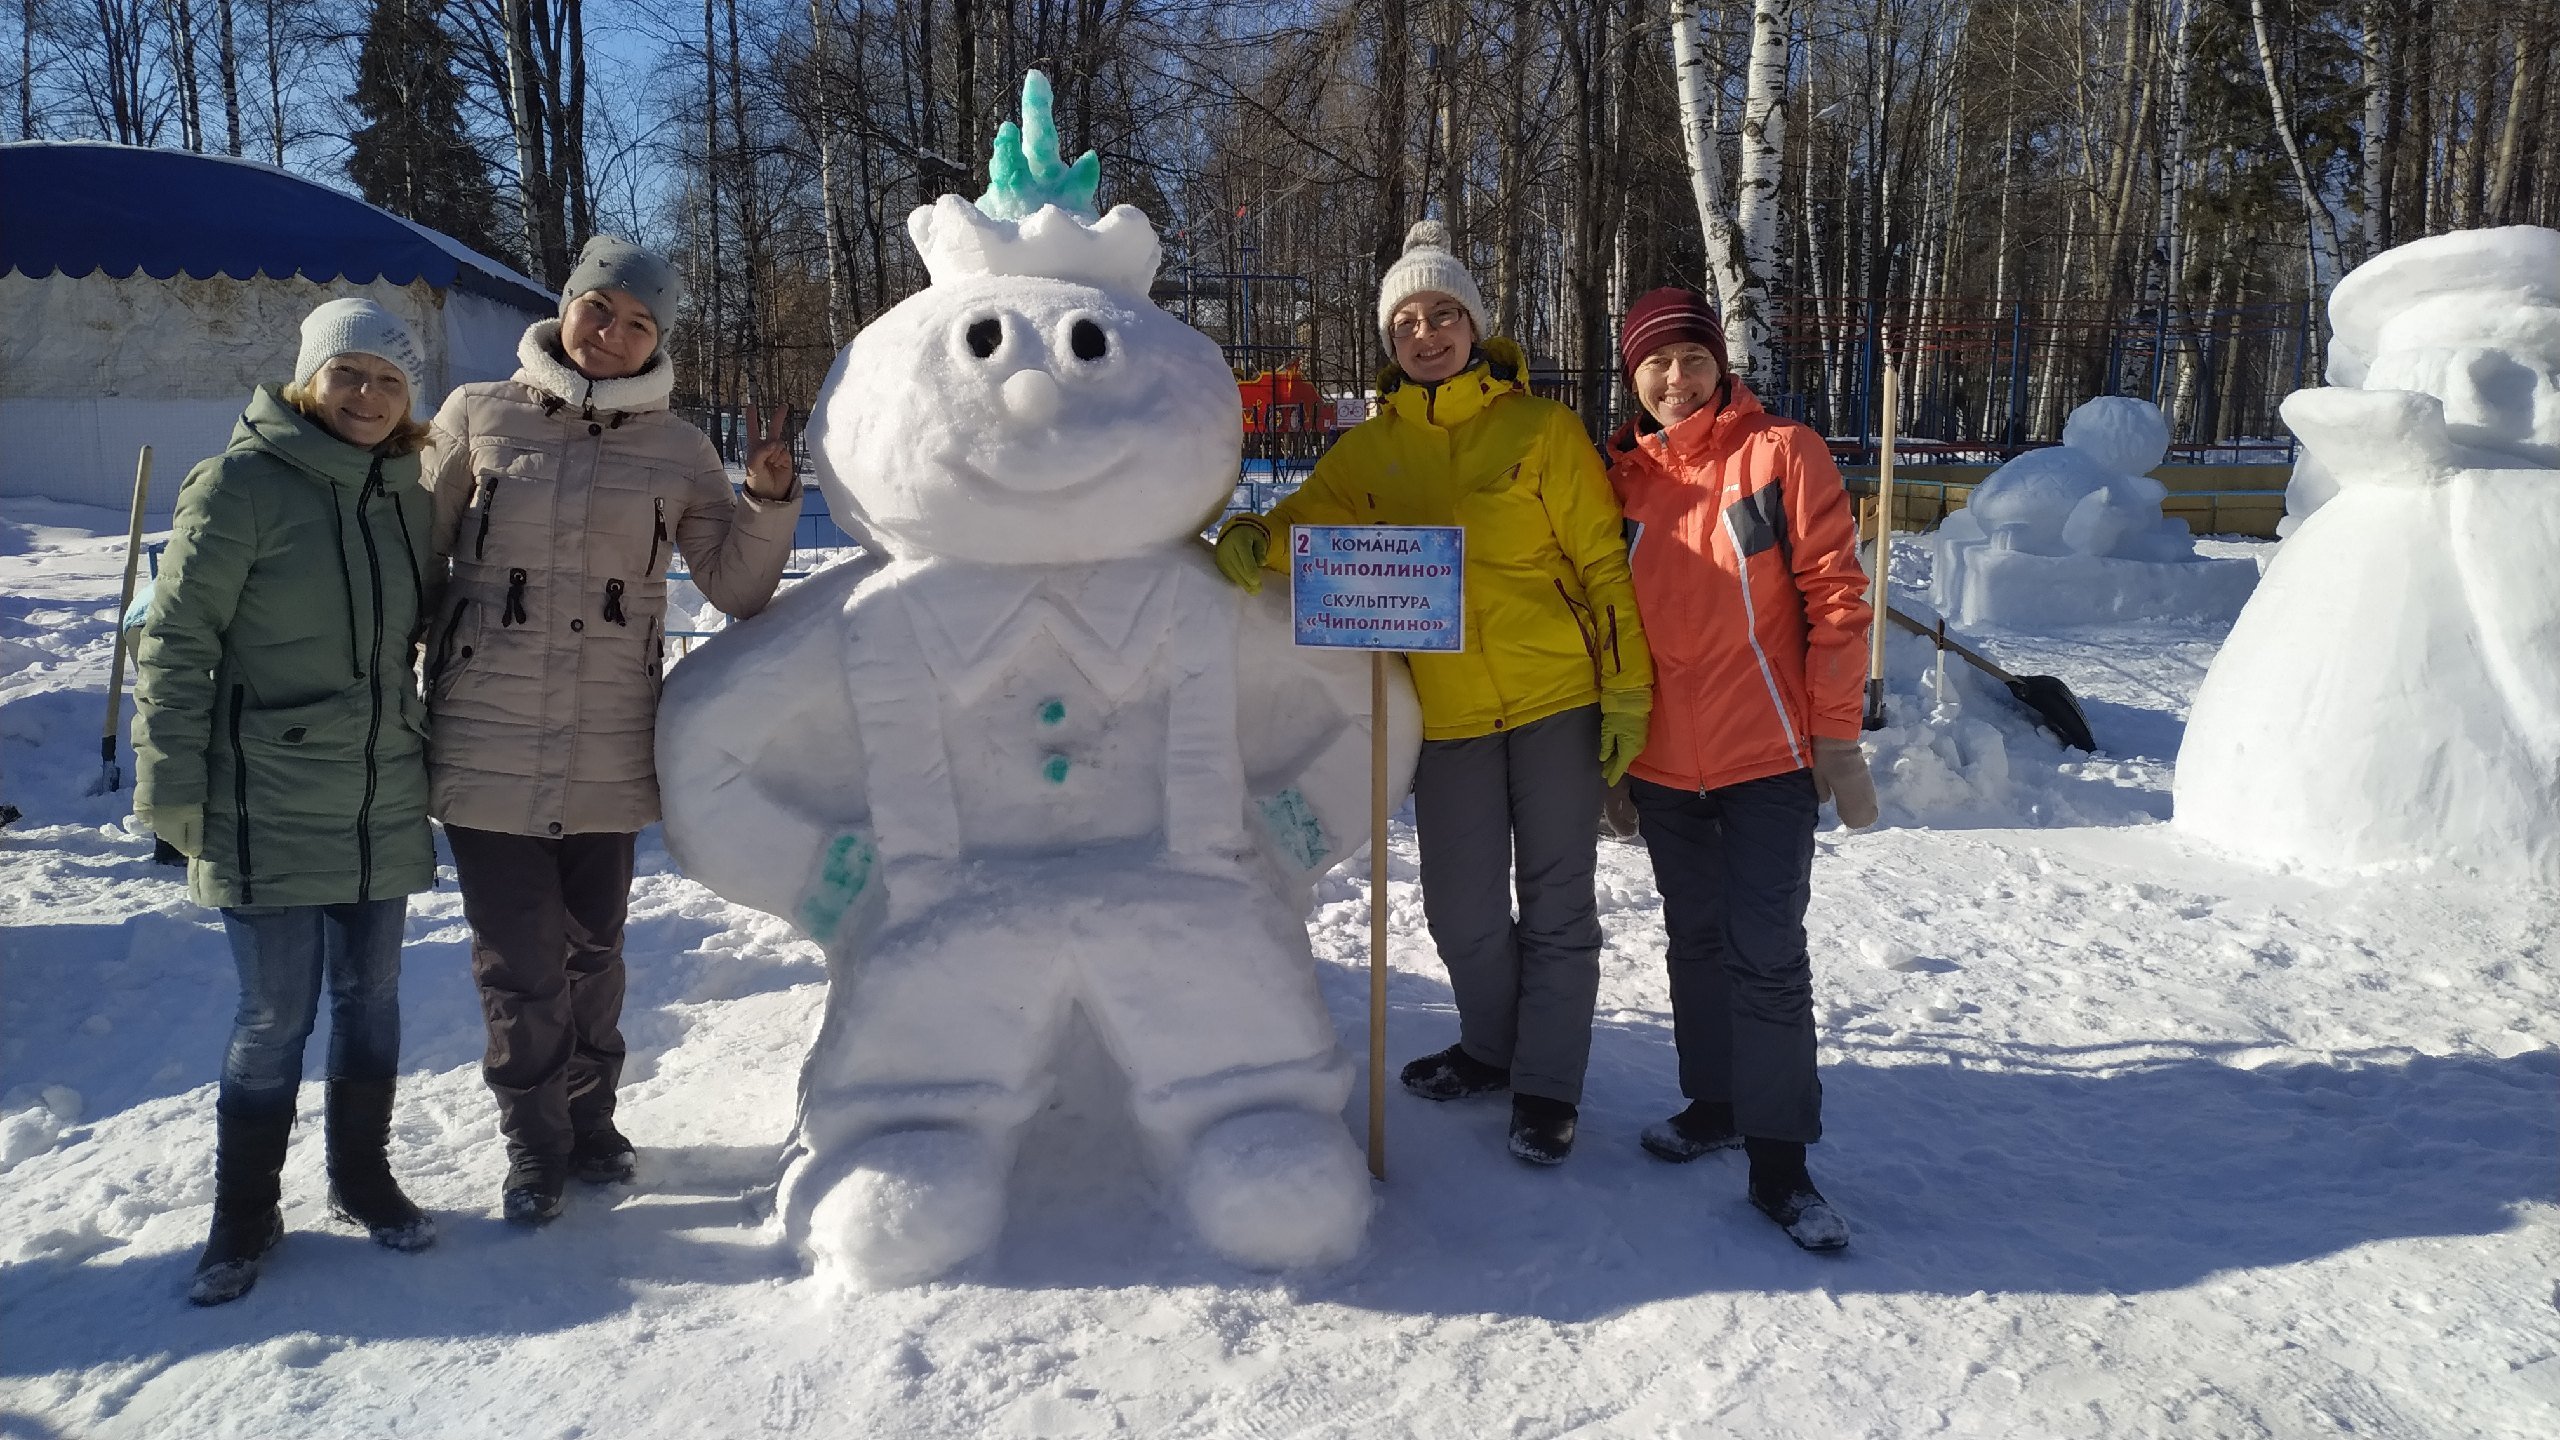 

Конкурс снежных фигур «Белый фестиваль — 2021» пройдёт в Ижевске 21 февраля

